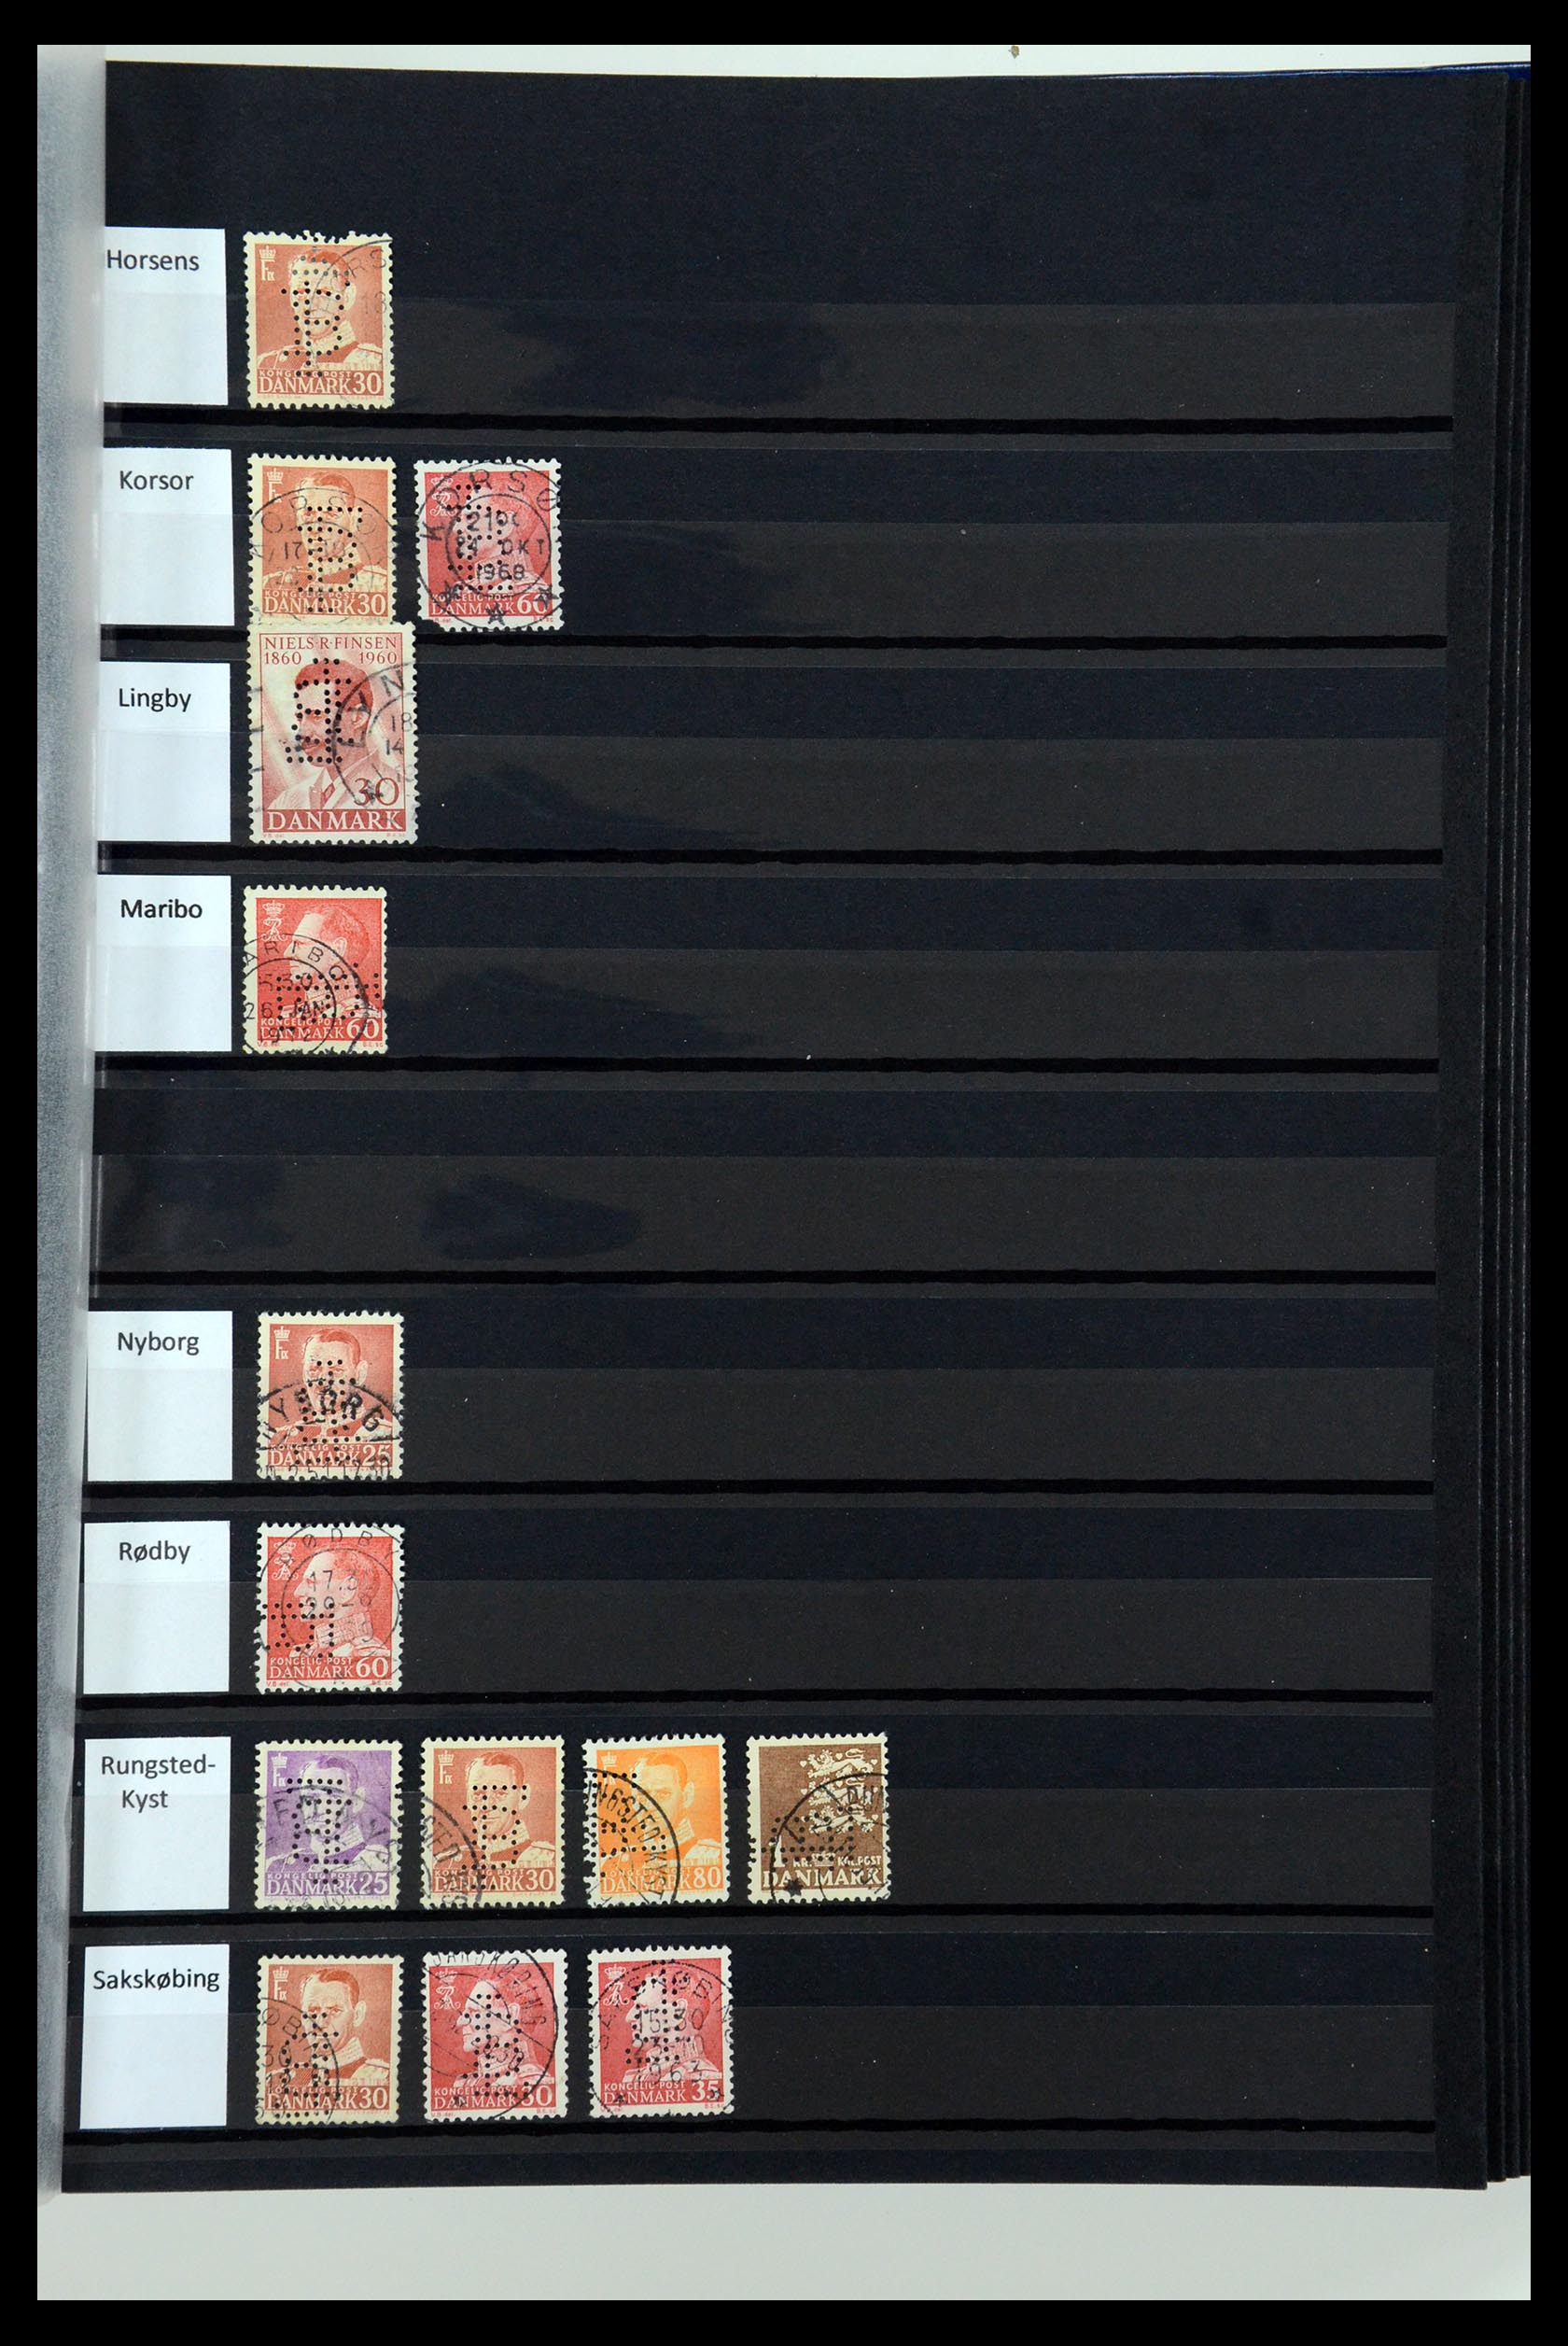 36396 088 - Postzegelverzameling 36396 Denemarken perfins.